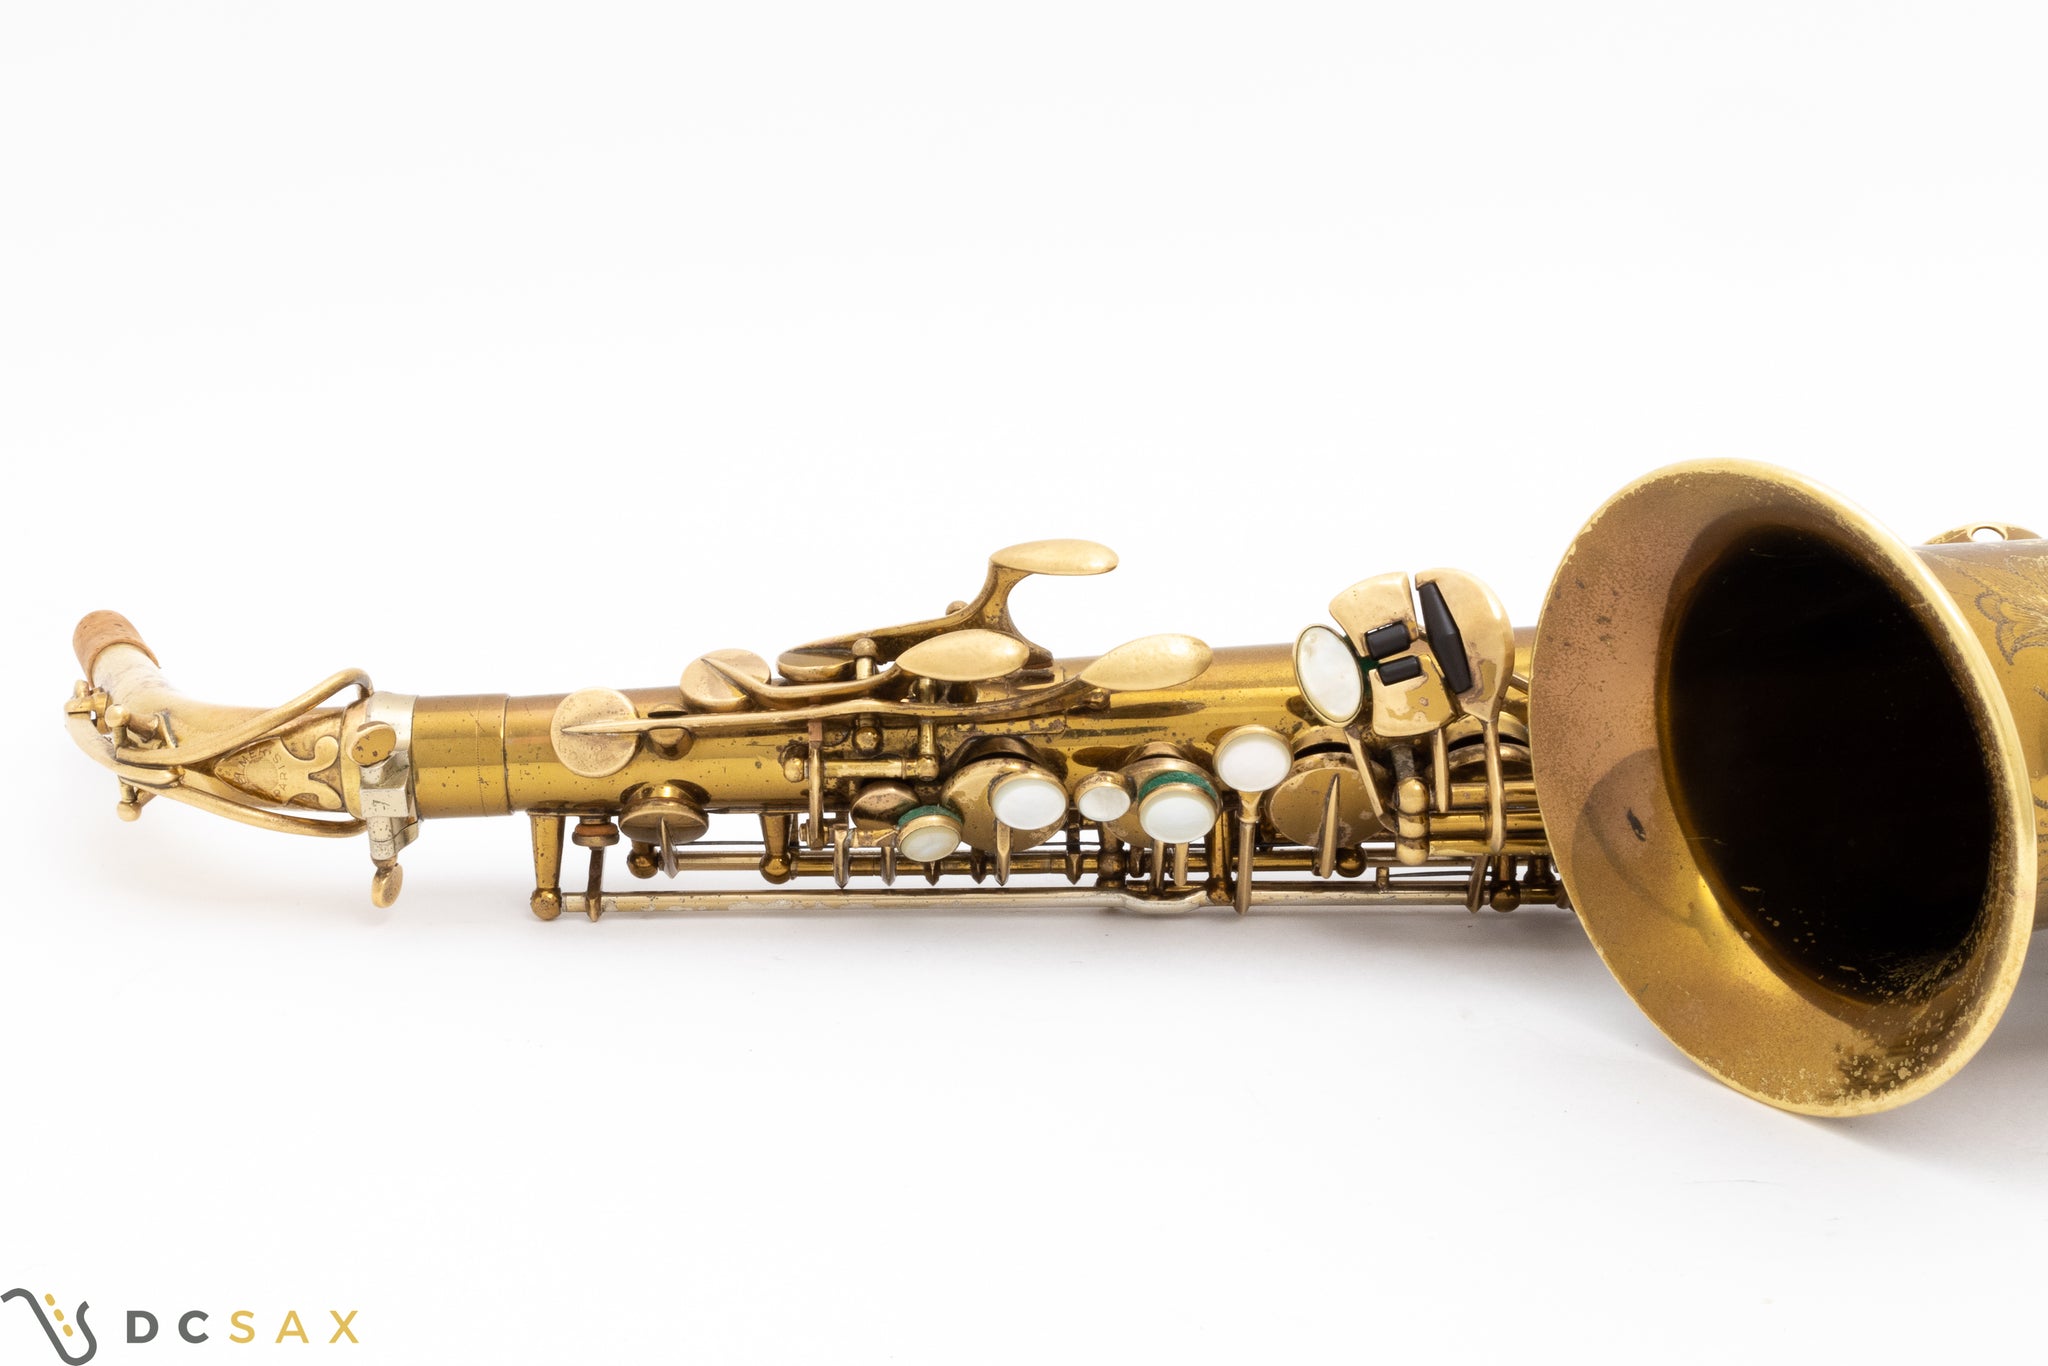 Selmer Super Balanced Action SBA Alto Saxophone, 96% Original Lacquer, Video